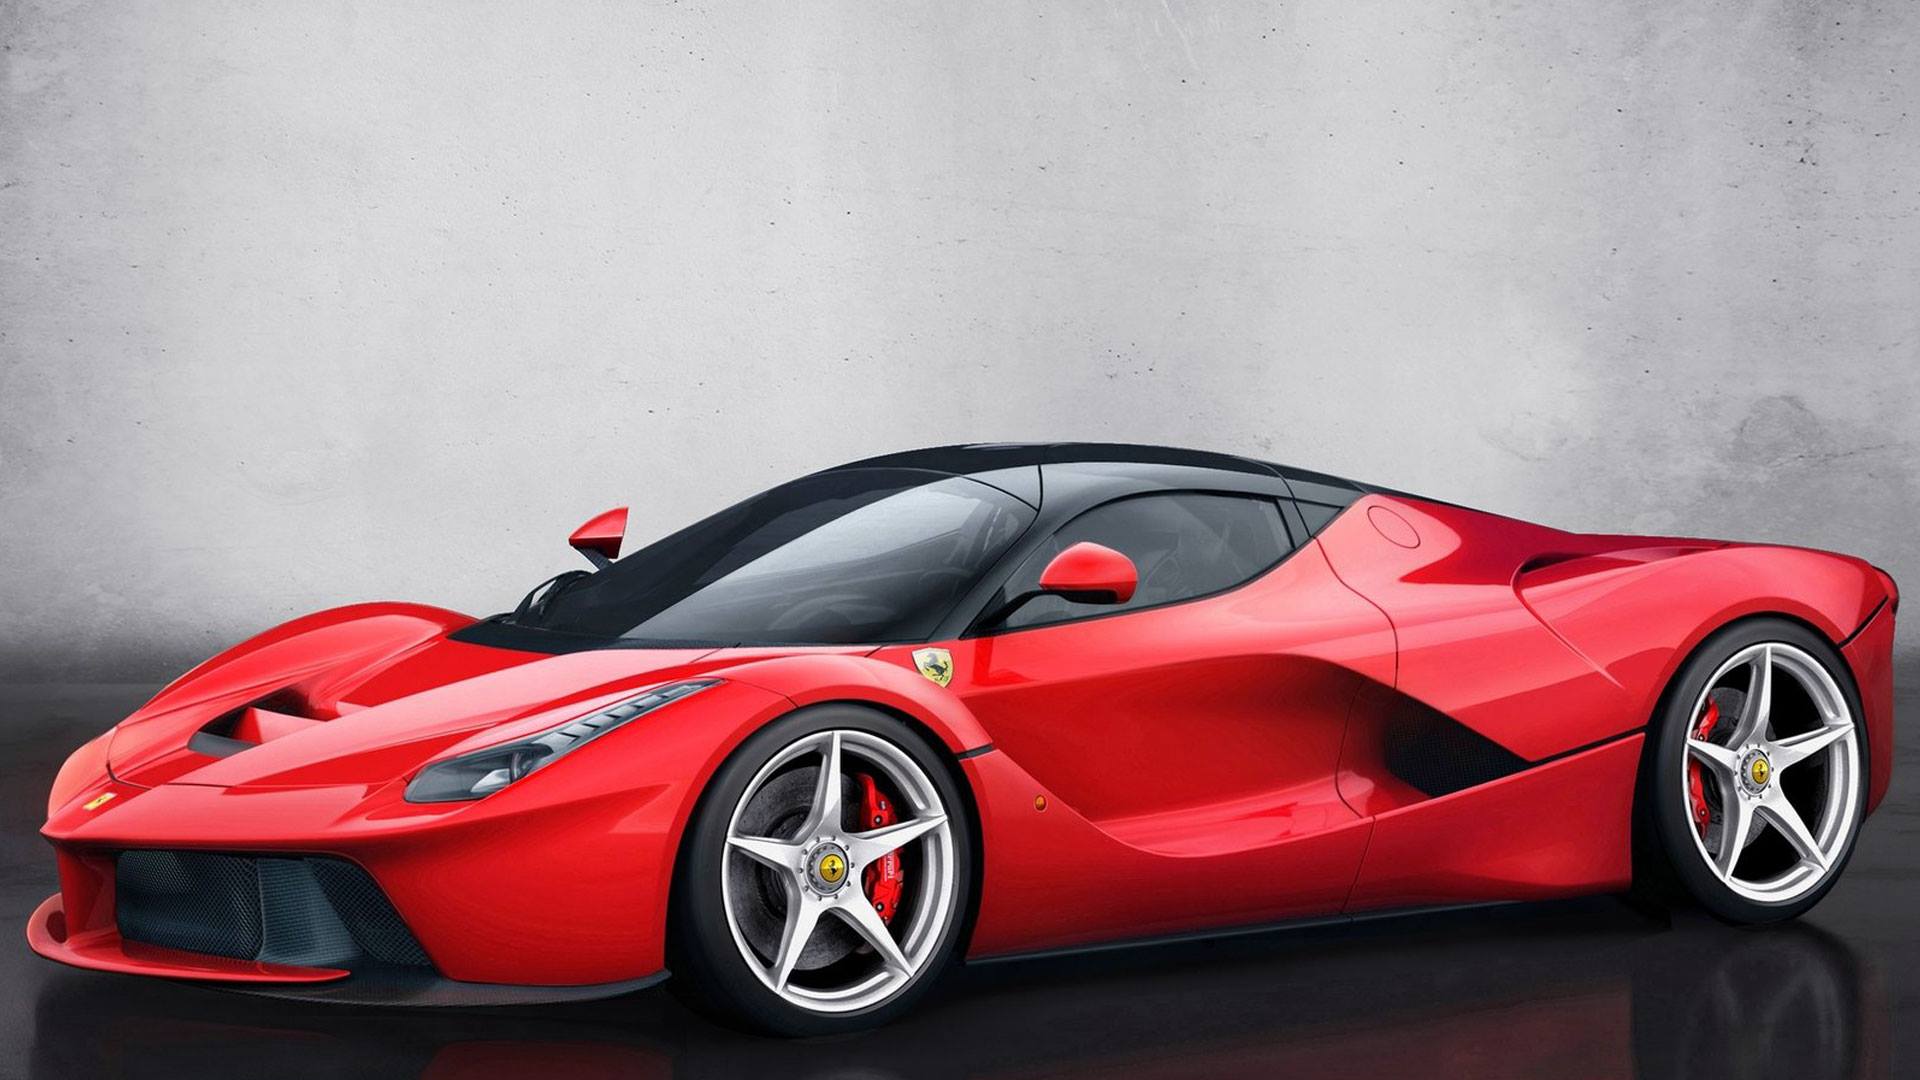 Full HD Super Auto Wallpapers |1080p | AutoWallz: Ferrari ...